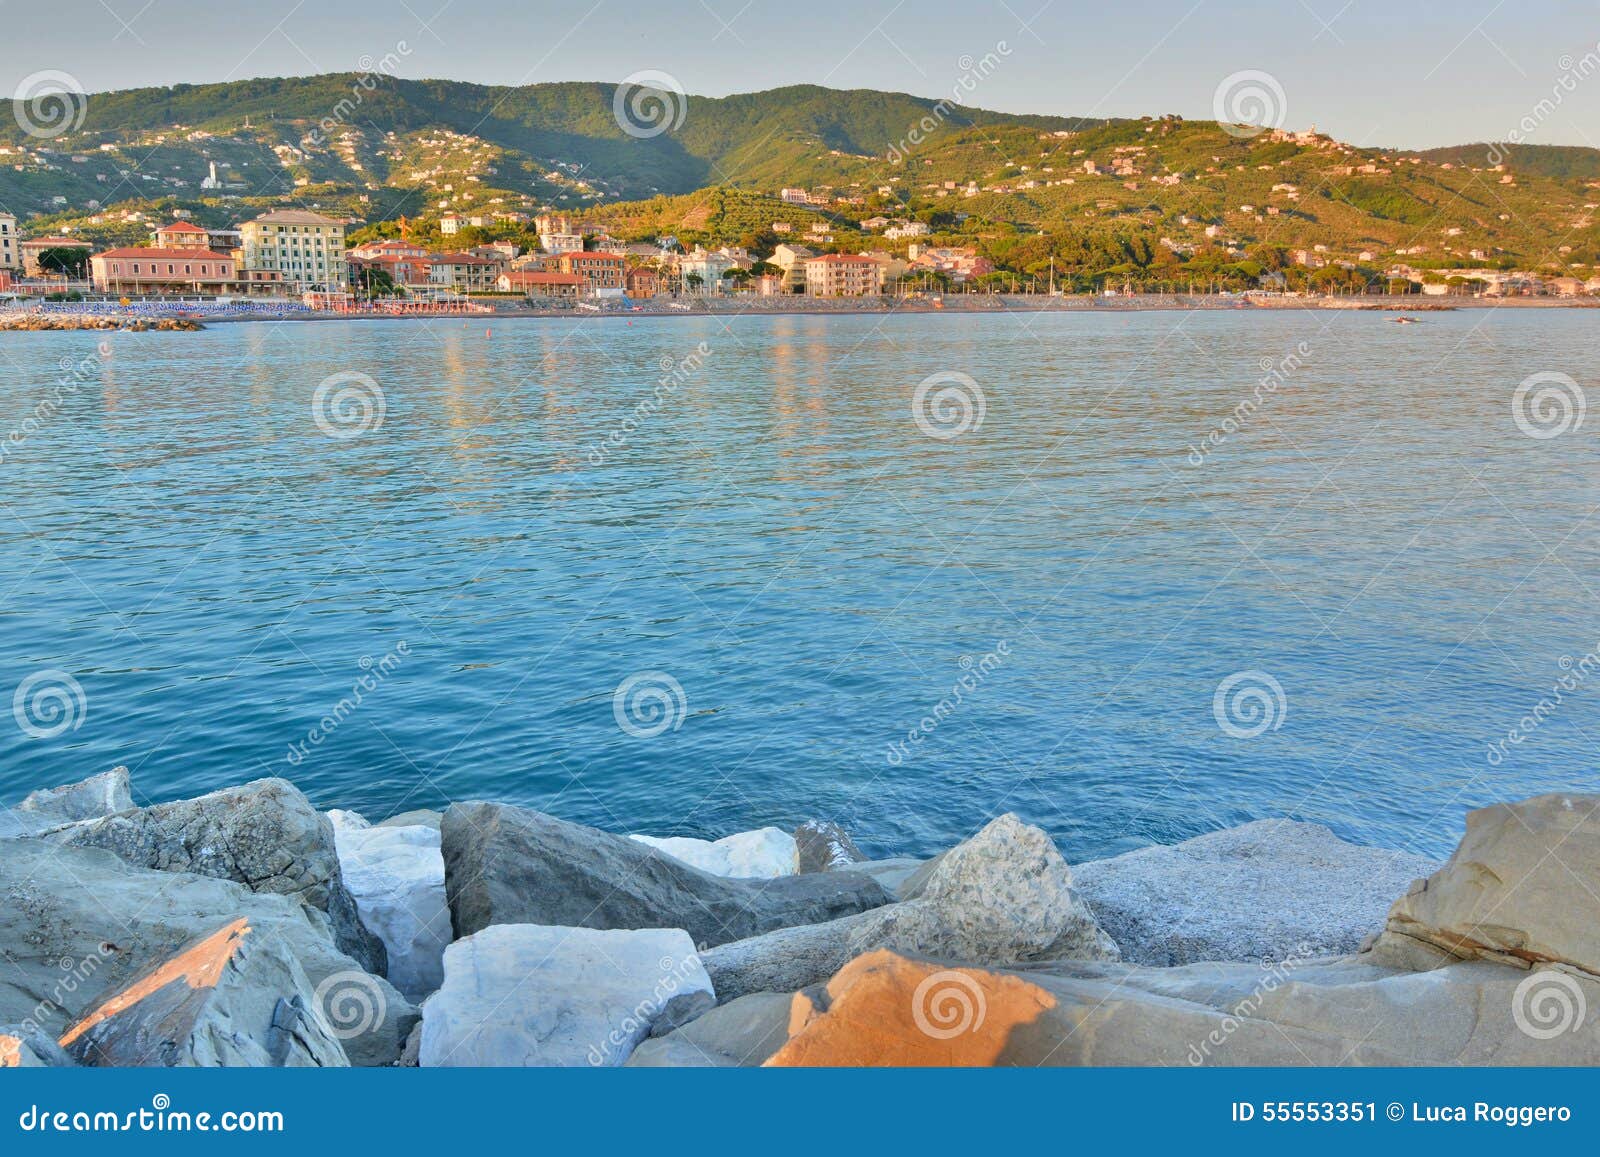 Solnedgångsikt från porten Lavagna Liguria italy. Lavagna är en turist- hamnstad i den buktiga elasticiteten av den italienska Rivieraen di Levante som kallas golfen av Tigullio, i landskapet av Genua i Liguria